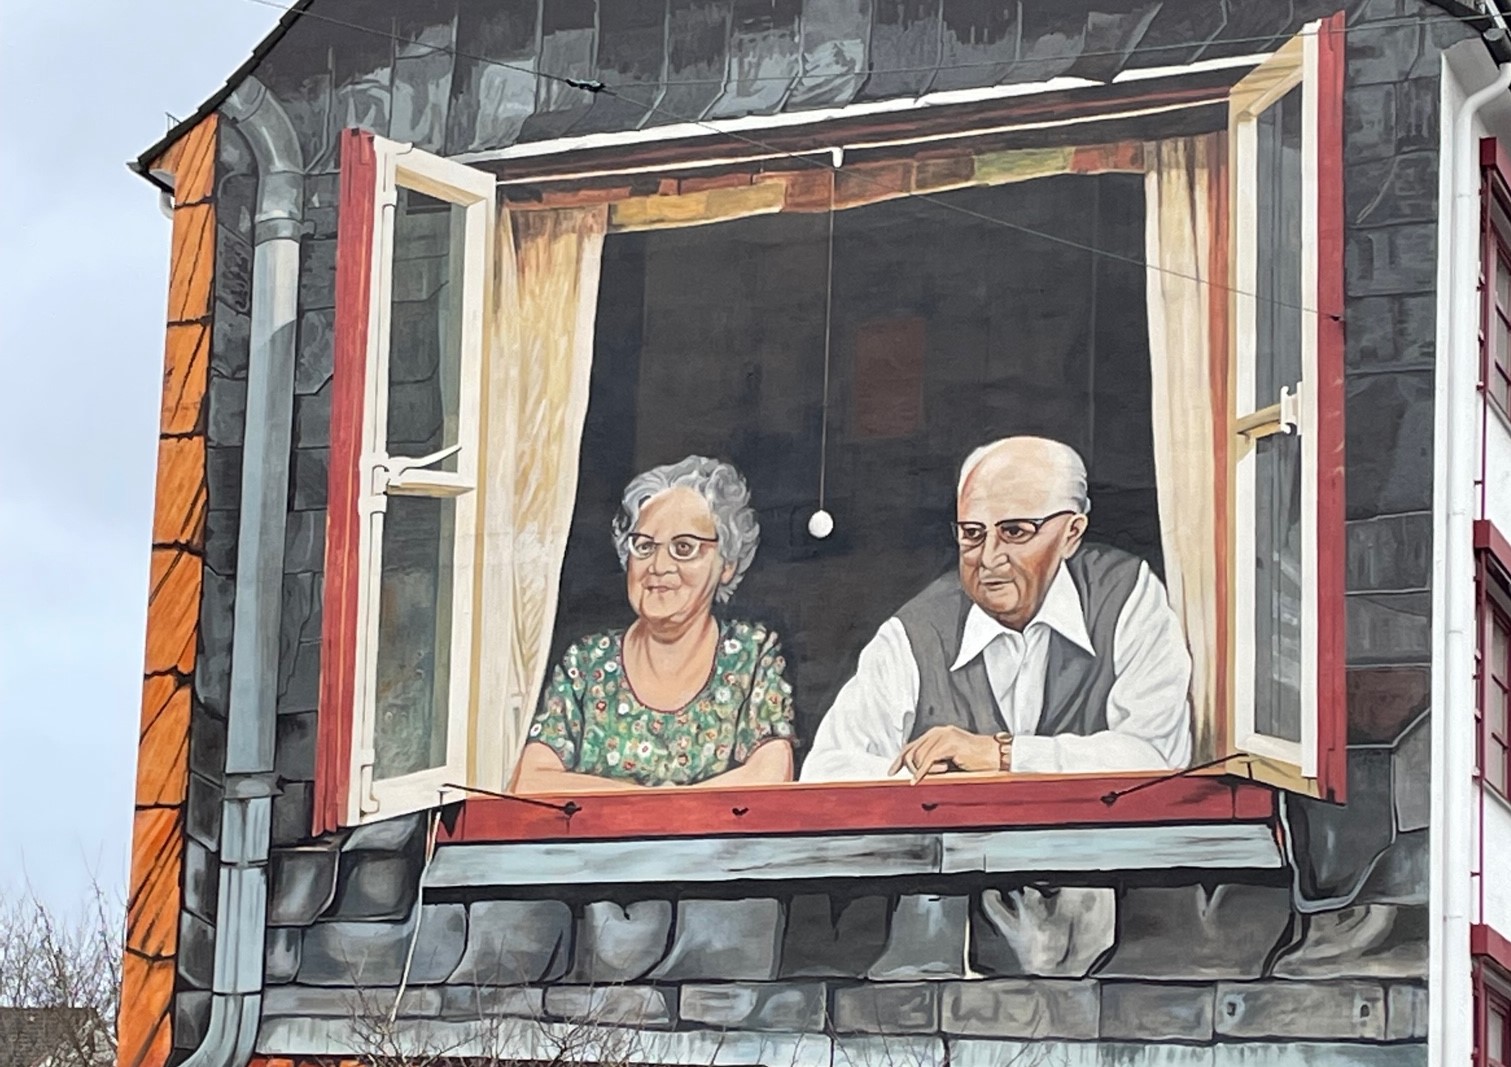 Bremer Hausfassade mit gemaltem Bild eines älteren Ehepaares, das aufgestützt auf die Fensterbank freundlich aus dem Fenster schaut